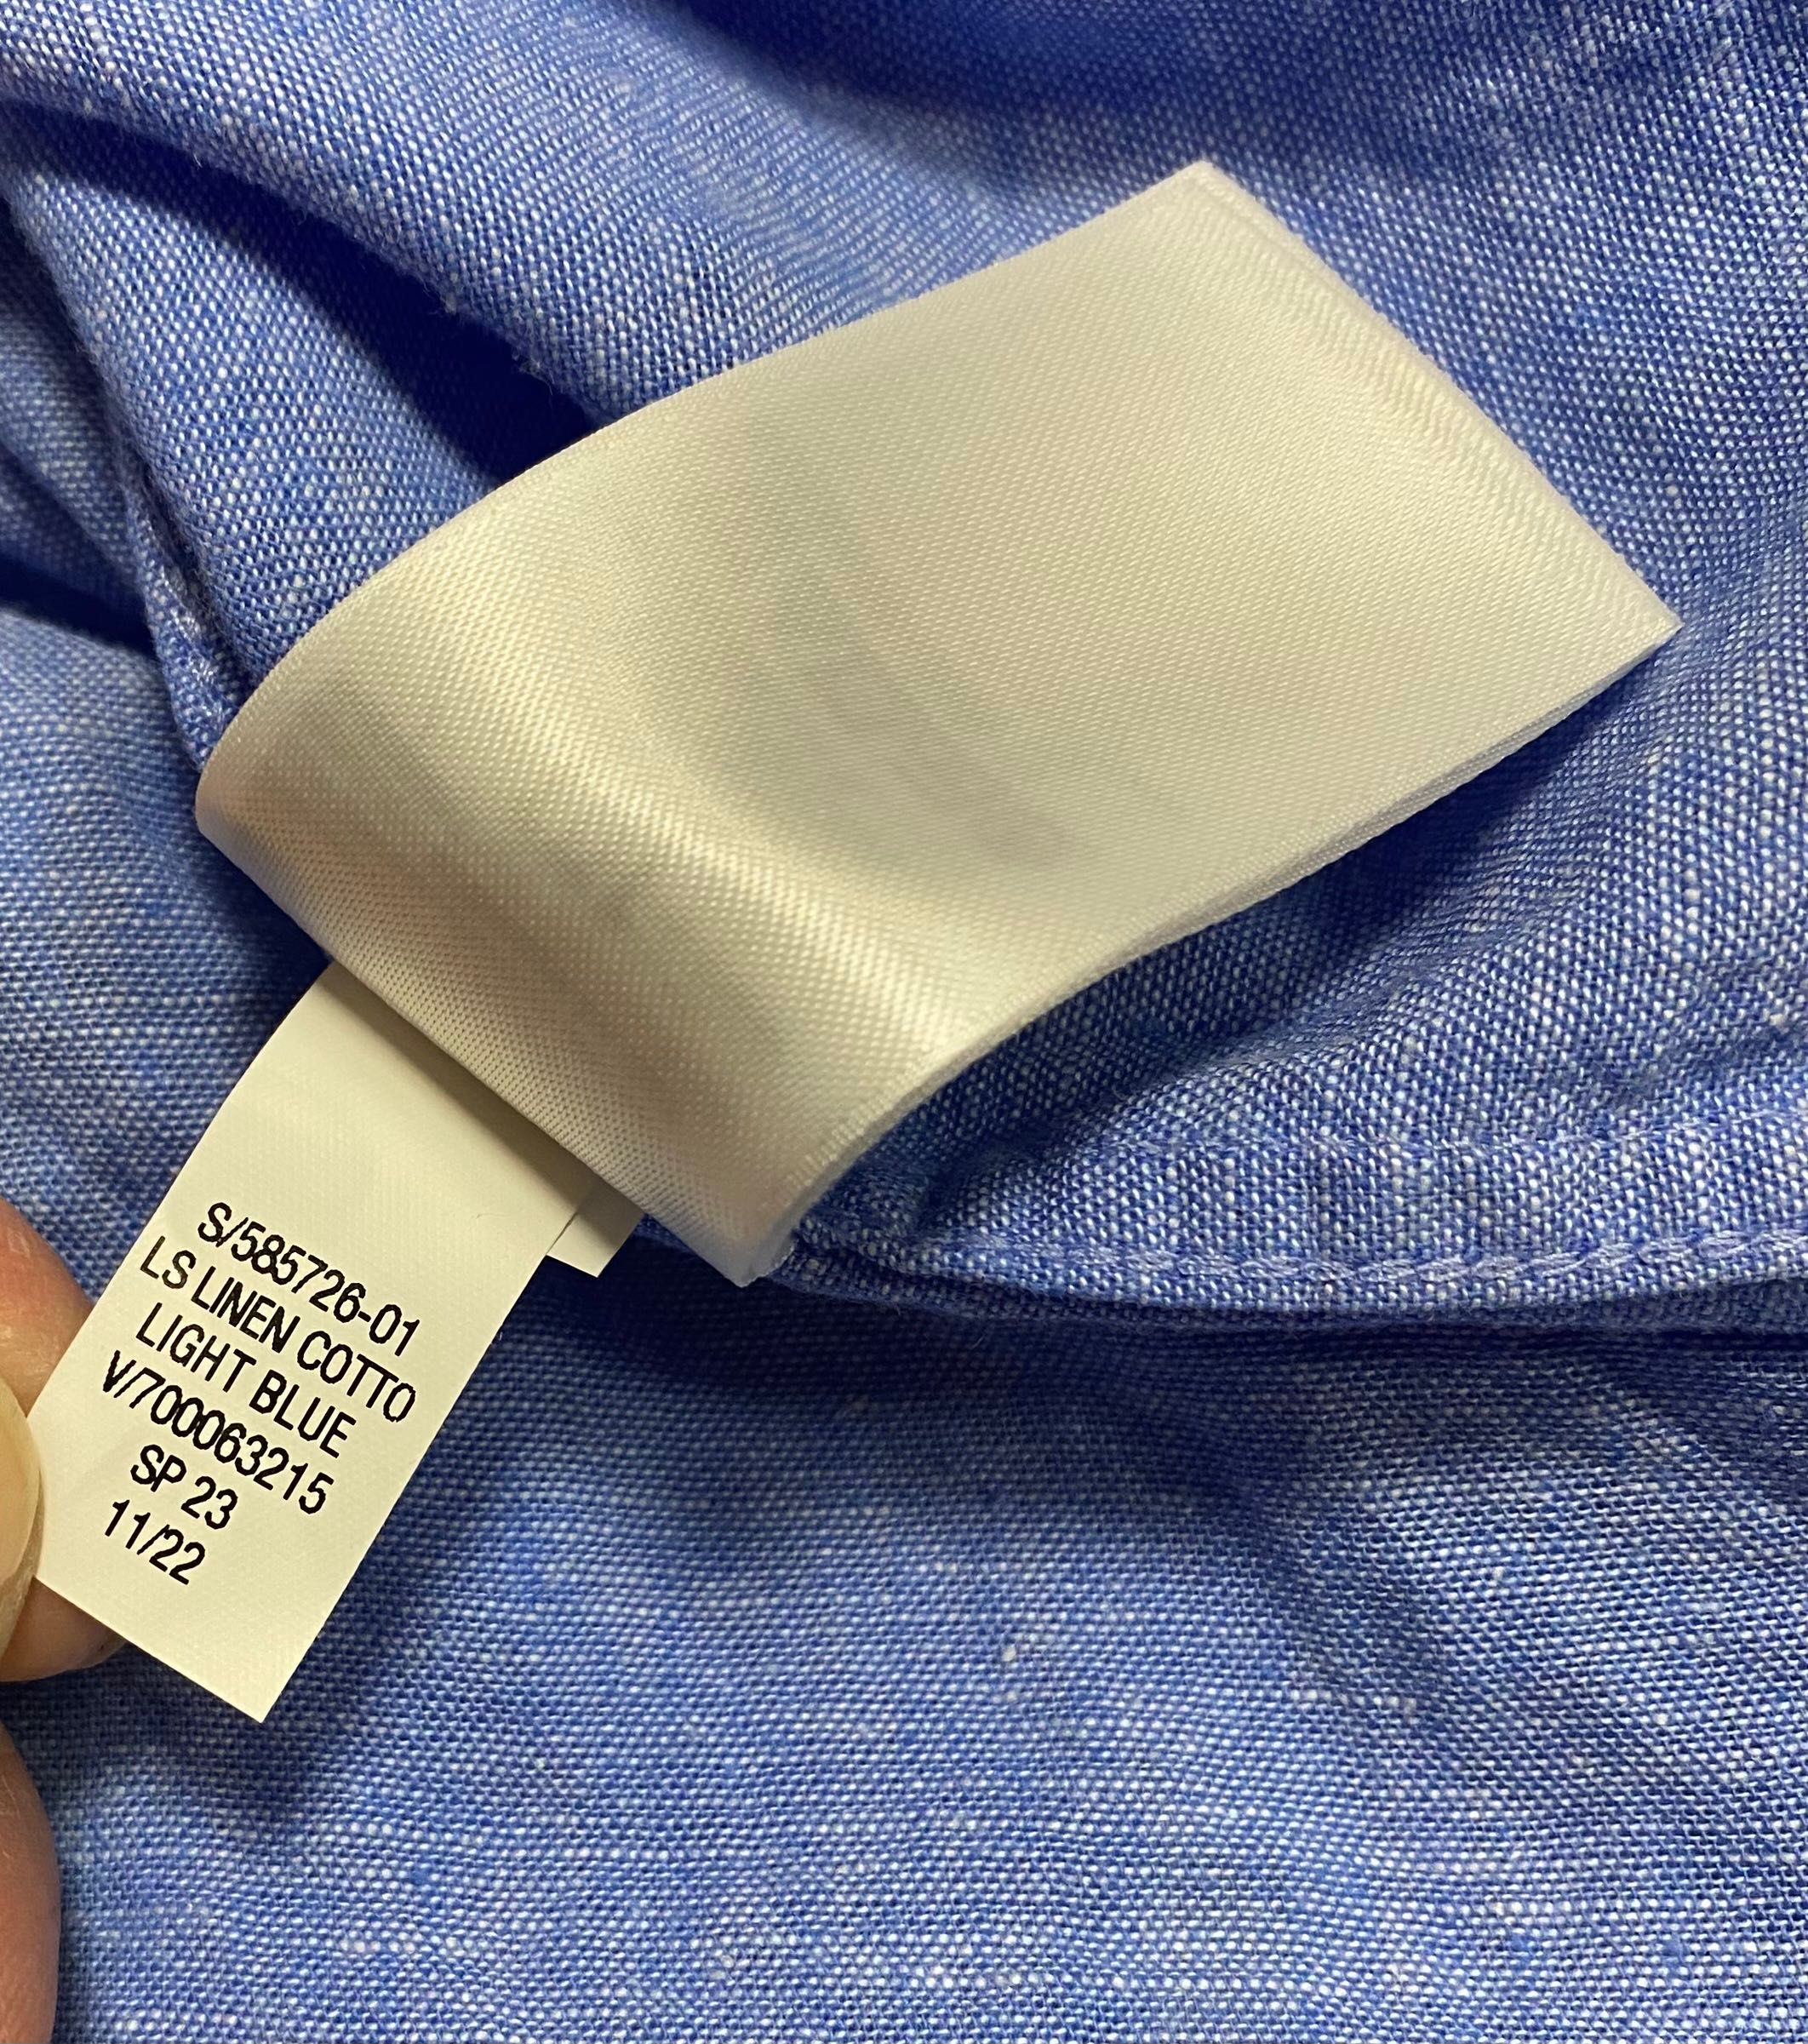 Рубашка GAP свіжа колекція лён-котон XL нова